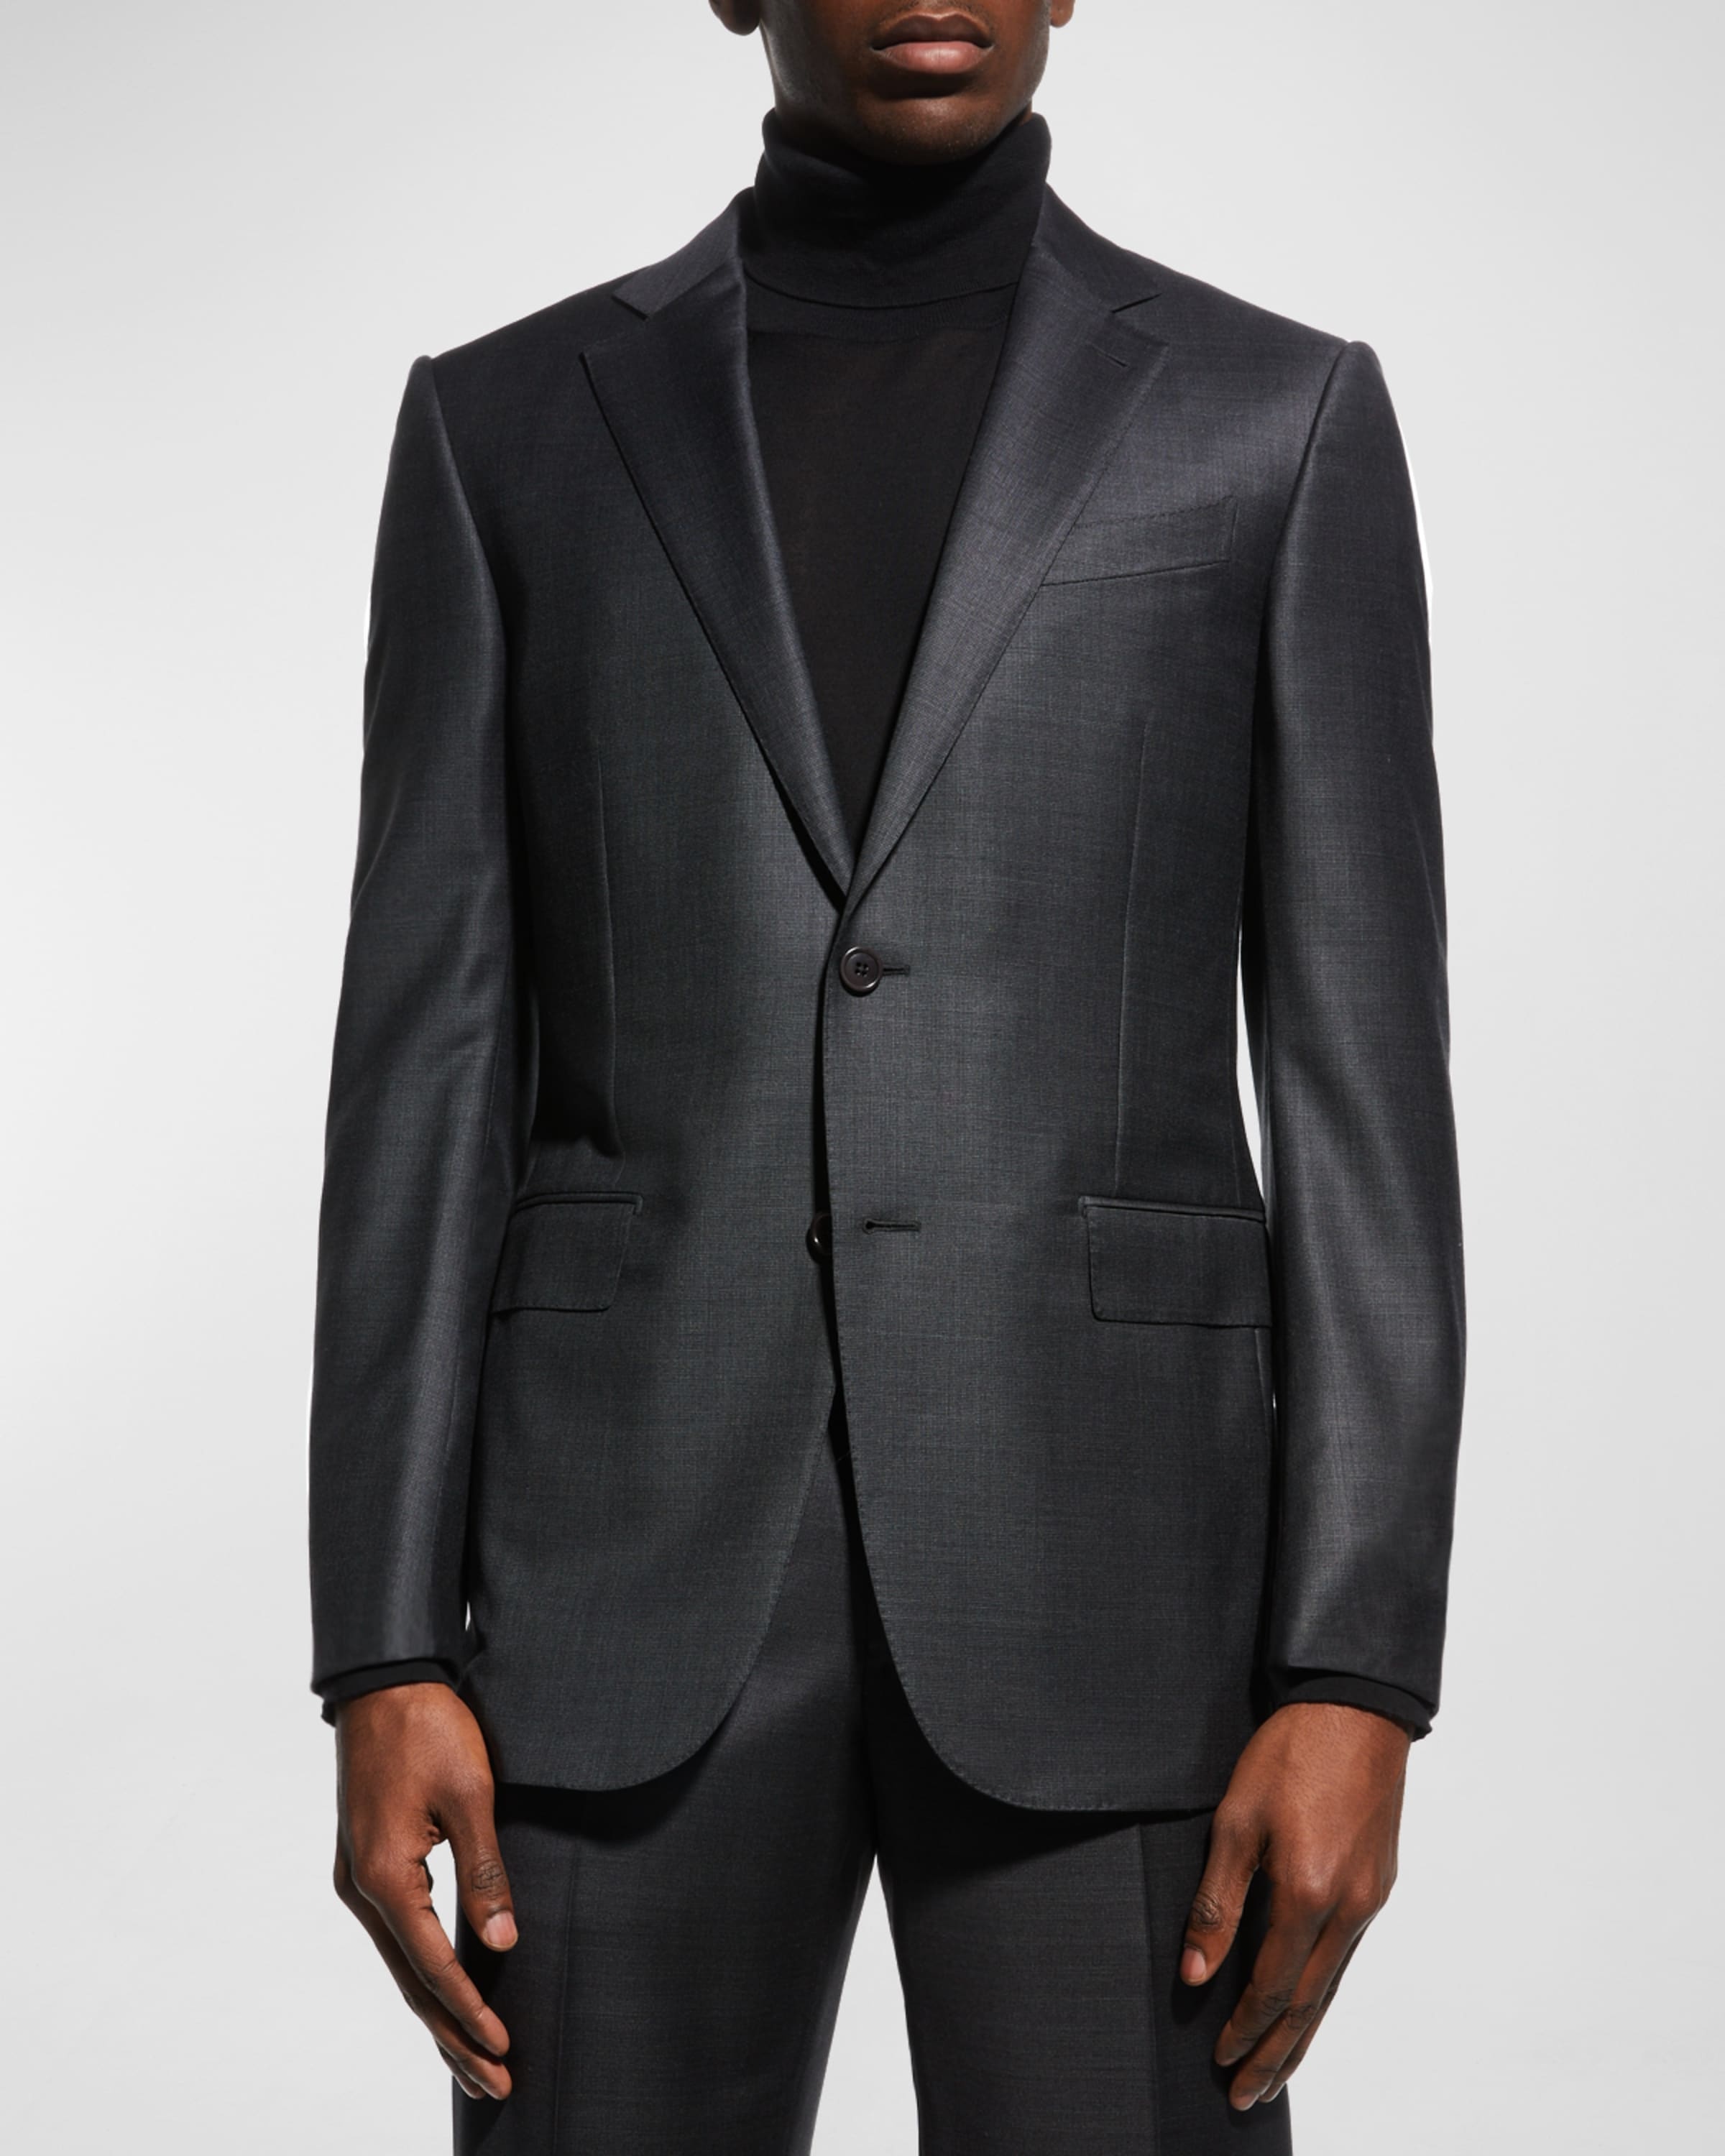 Men's Wool Tic-Weave Suit - 4